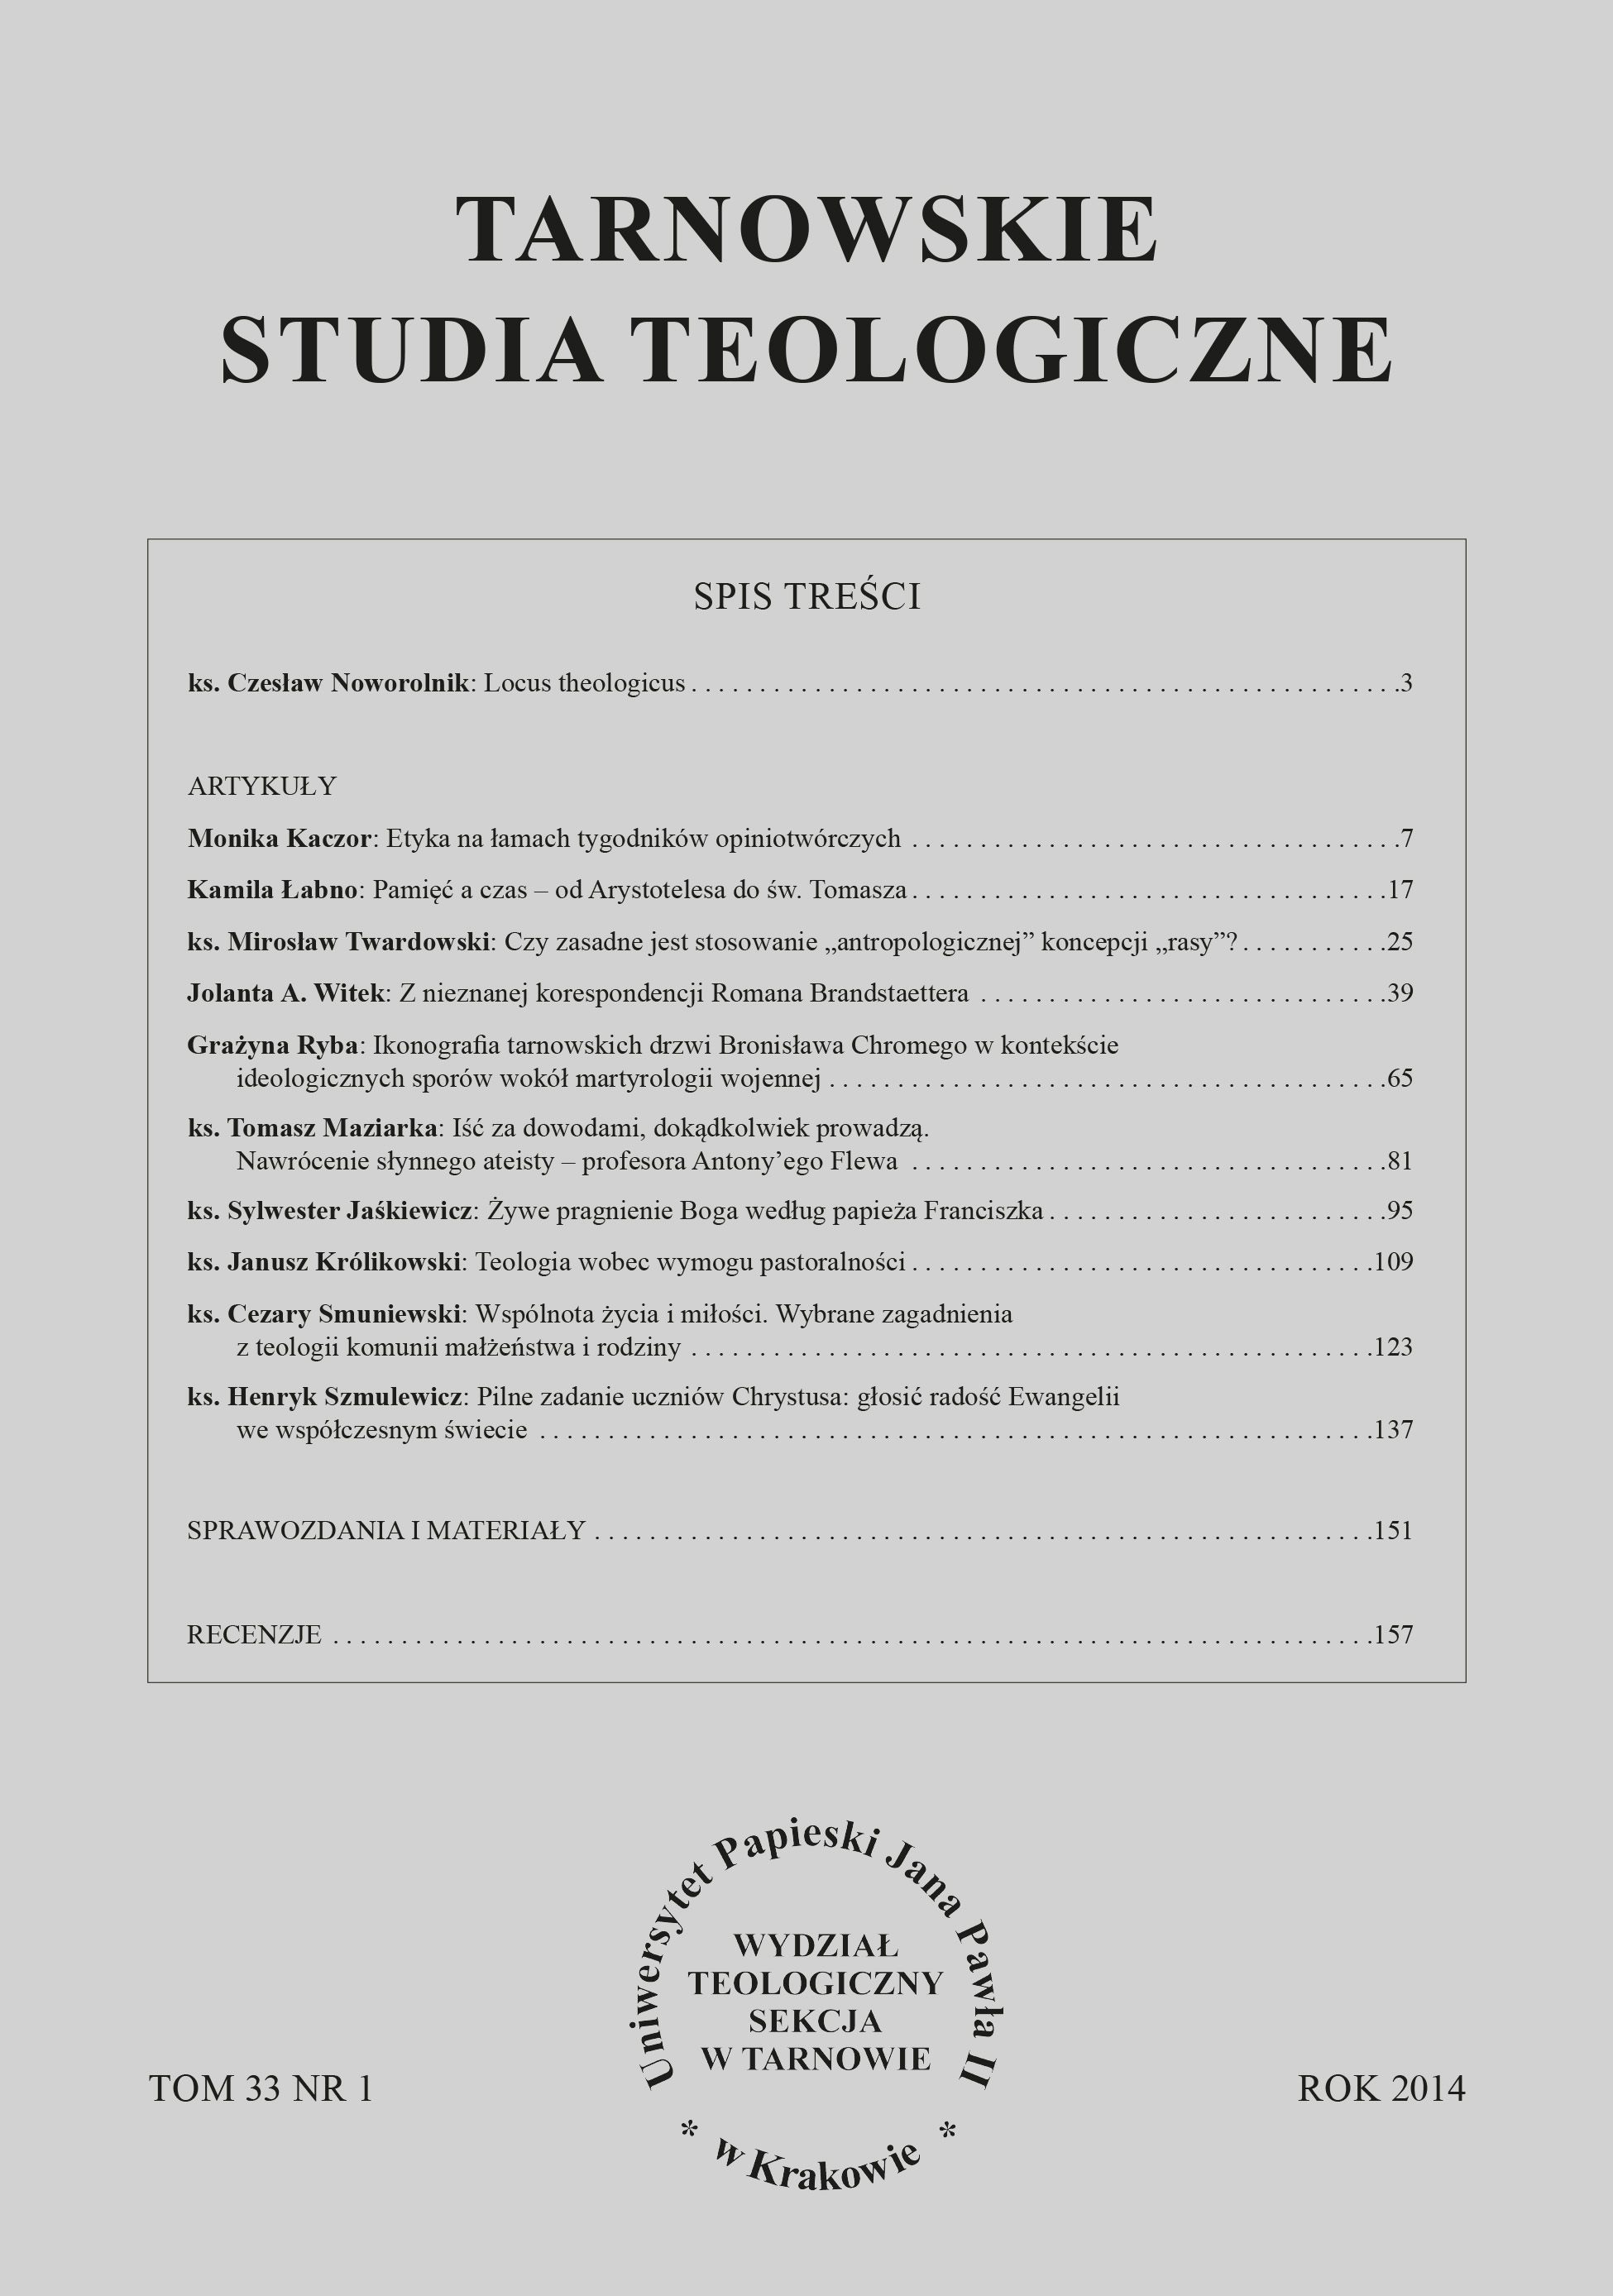 Fr. Andrzej Perzyński, Italian Theological Anthropology. Historical-Dogmatic Study, Lodz 2012, p. 404 Cover Image